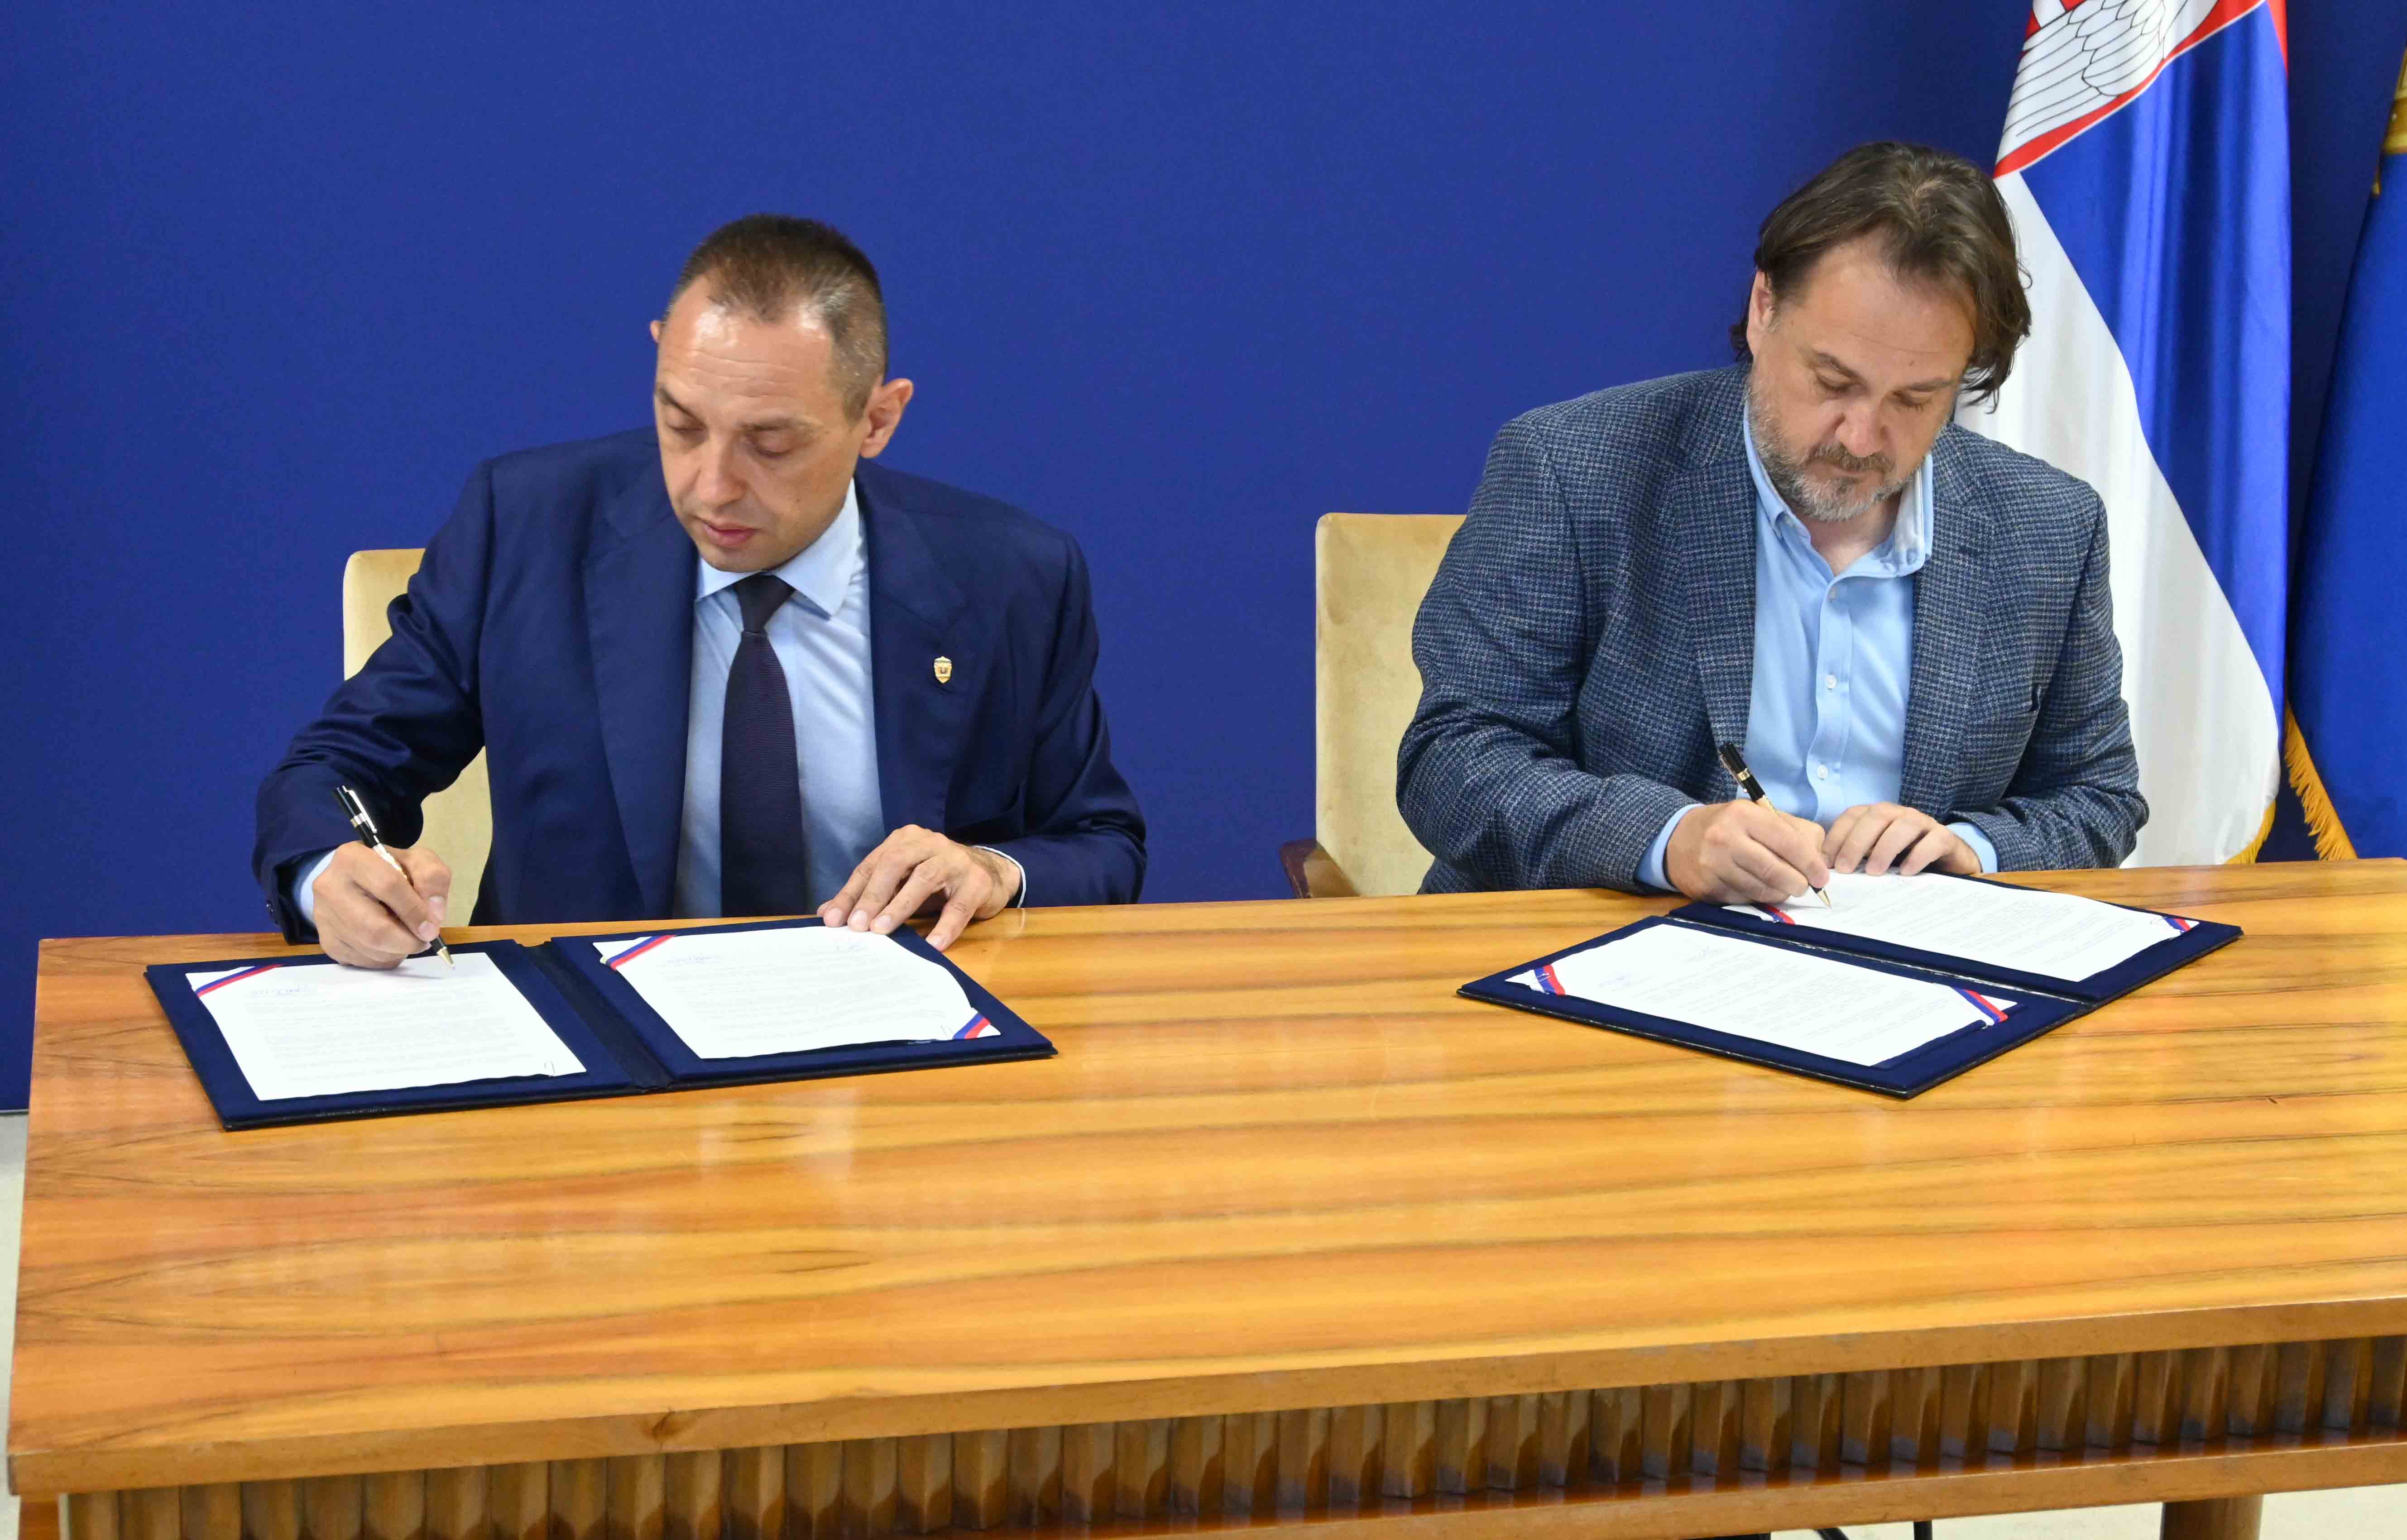 Ministar Aleksandar Vulin potpisao je sporazume o saradnji sa predstavnicima sportskih saveza